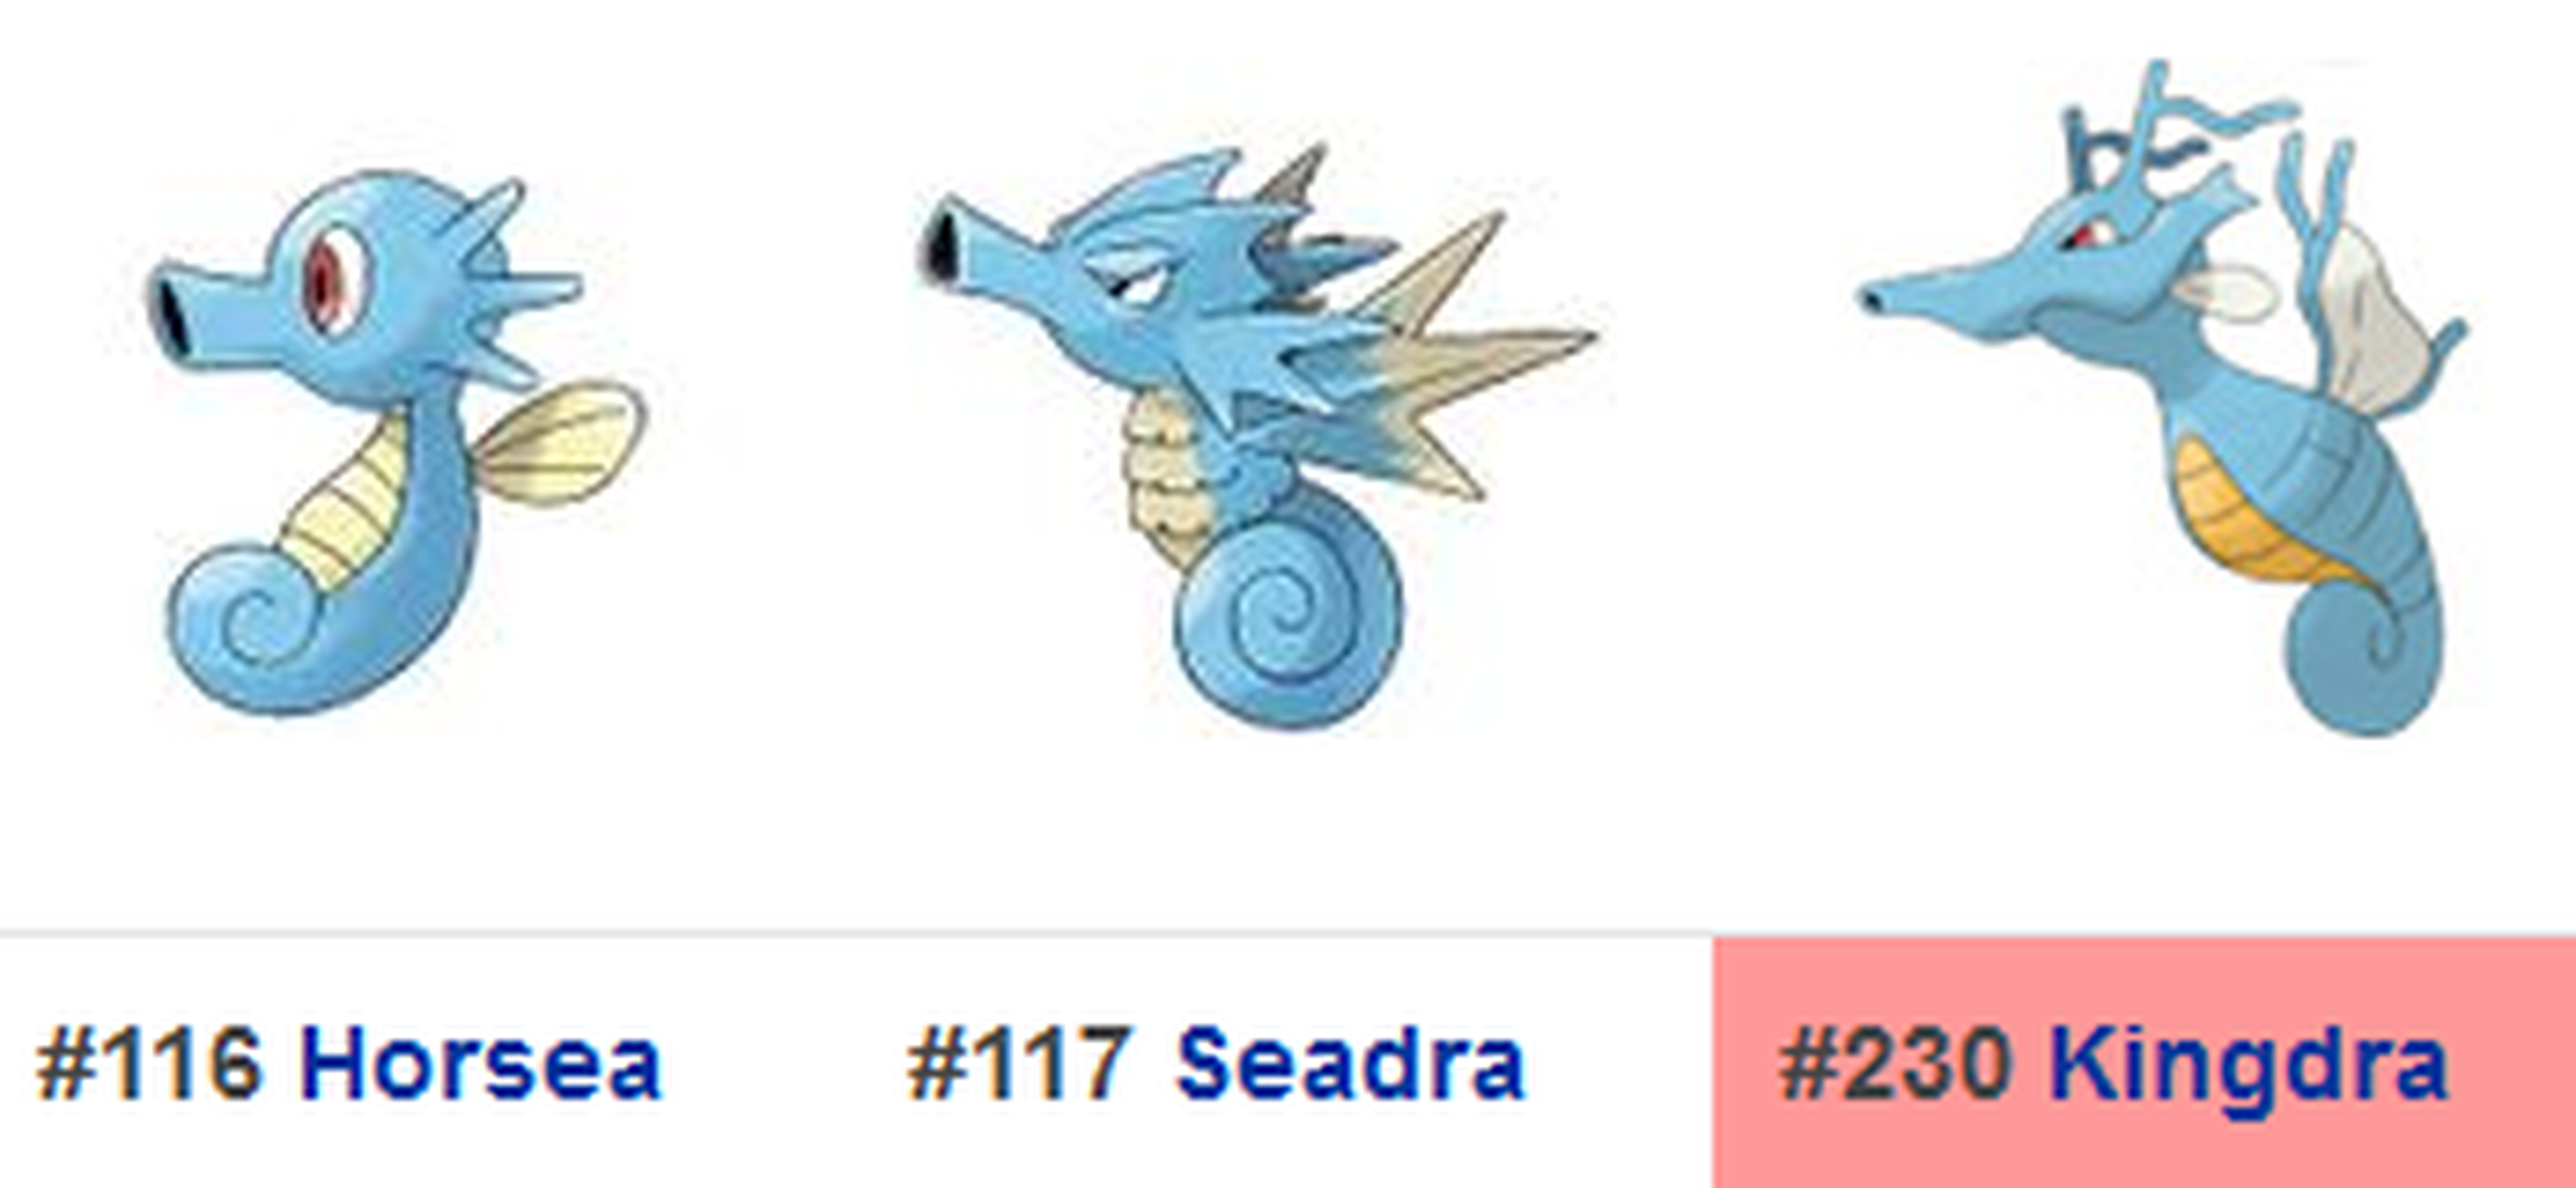 Kingdra se incorporaría en la 2ª generación de Pokémon GO